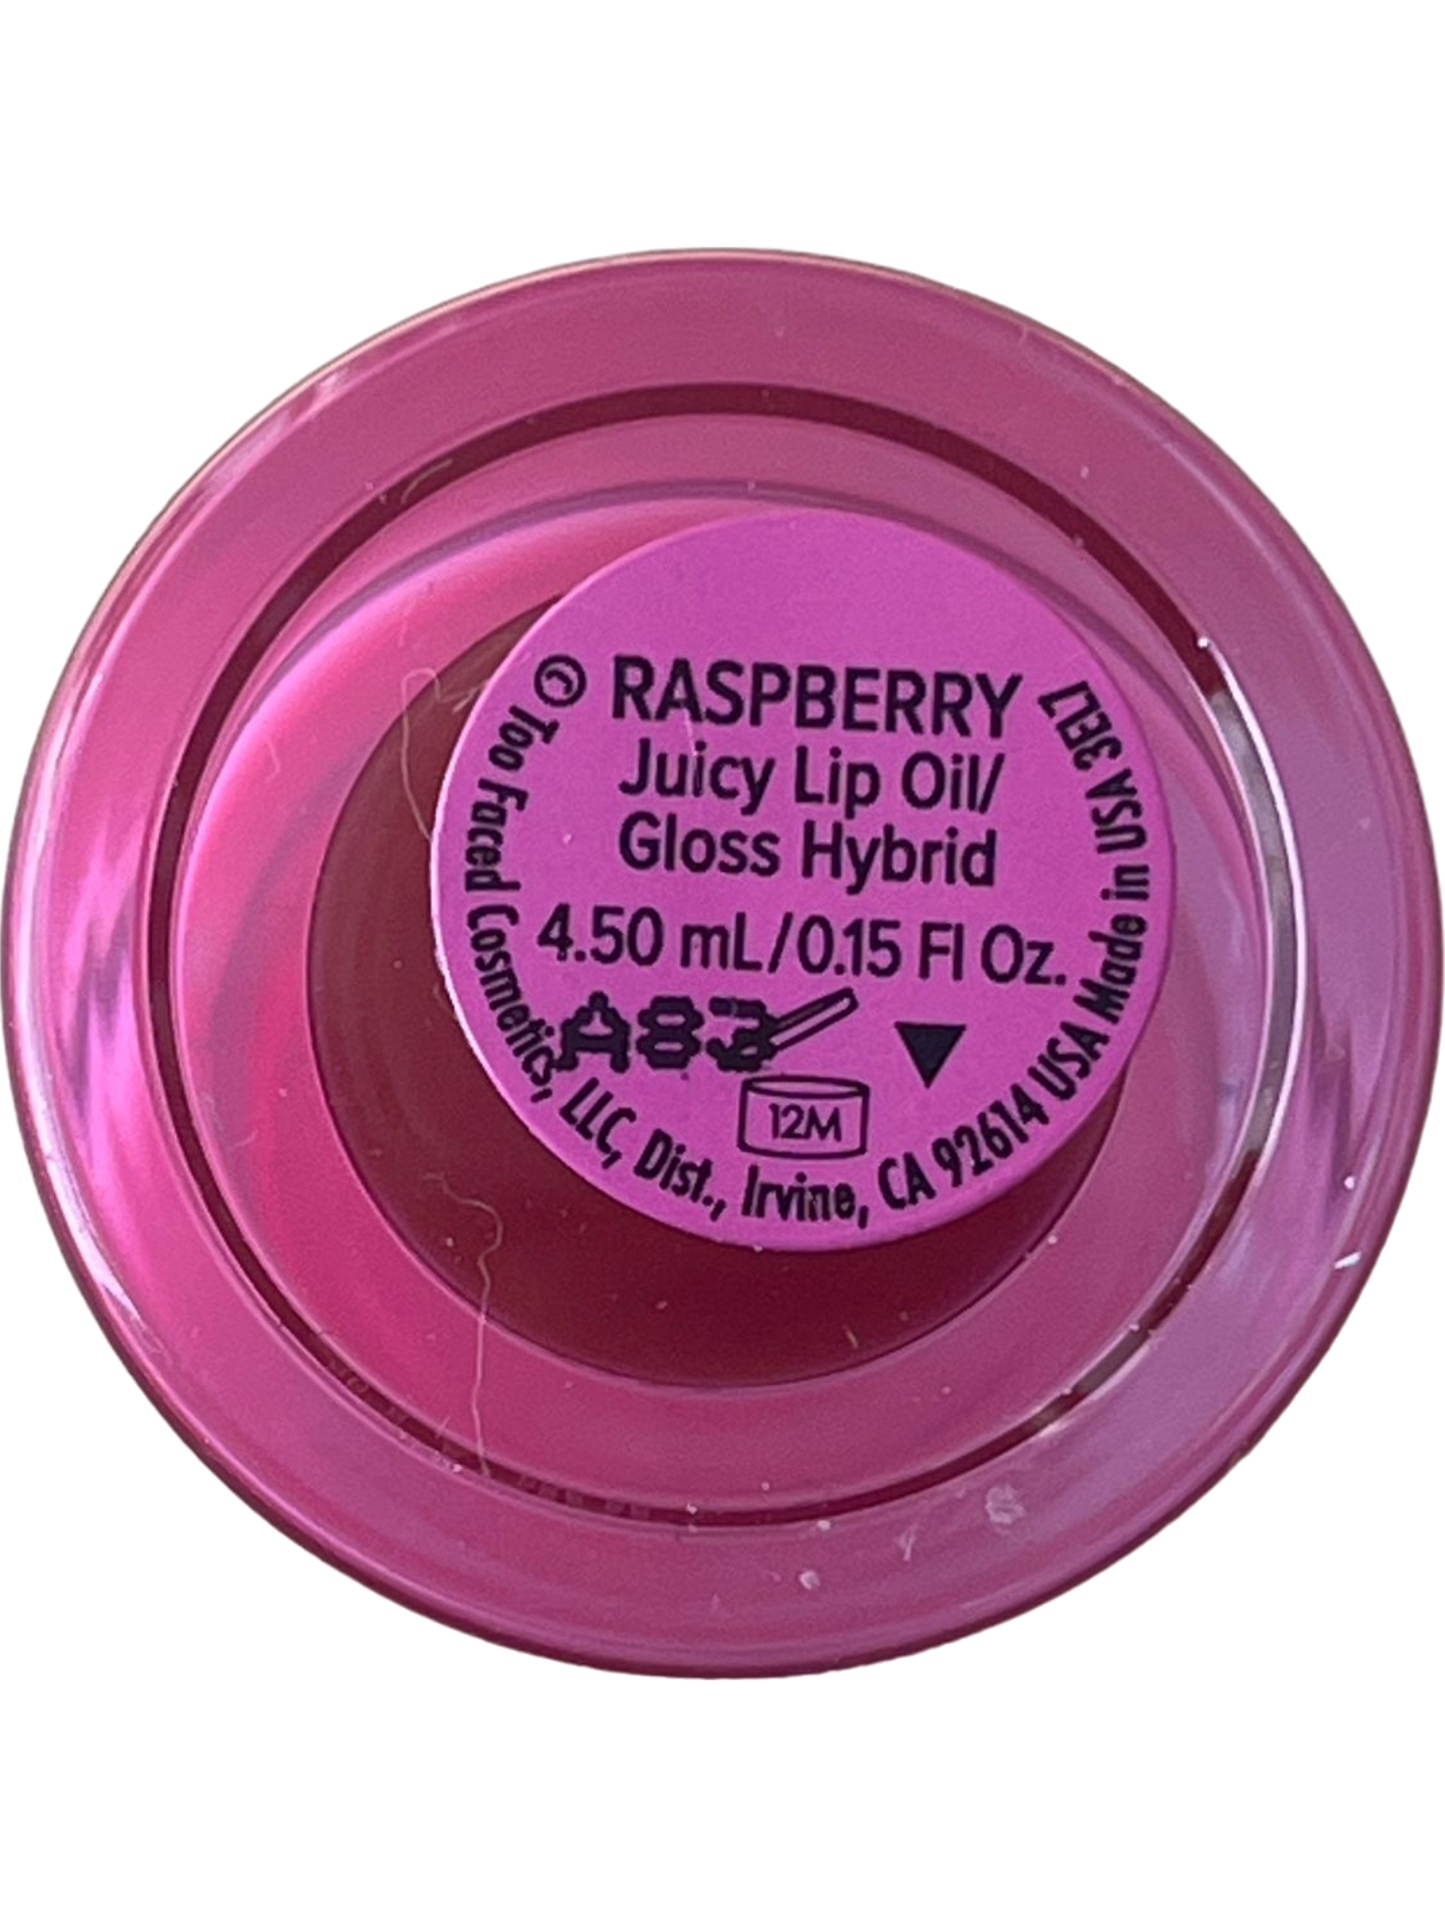 Raspberry Kissing Jelly Gloss Lip Oil Hybrid